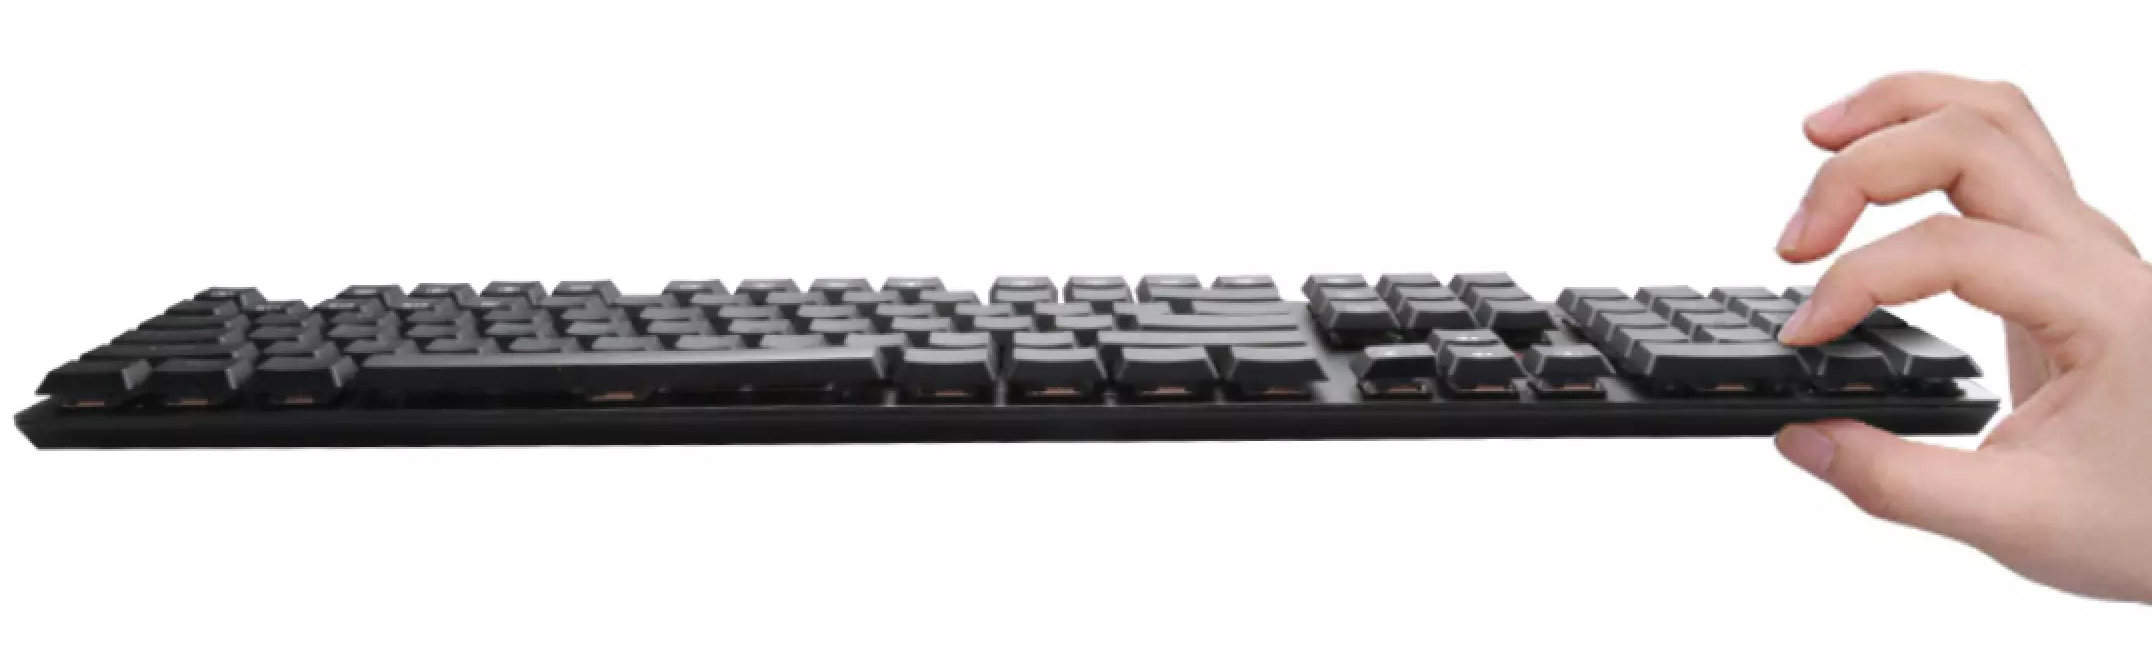 Механична клавиатура Redragon - Apas Pro